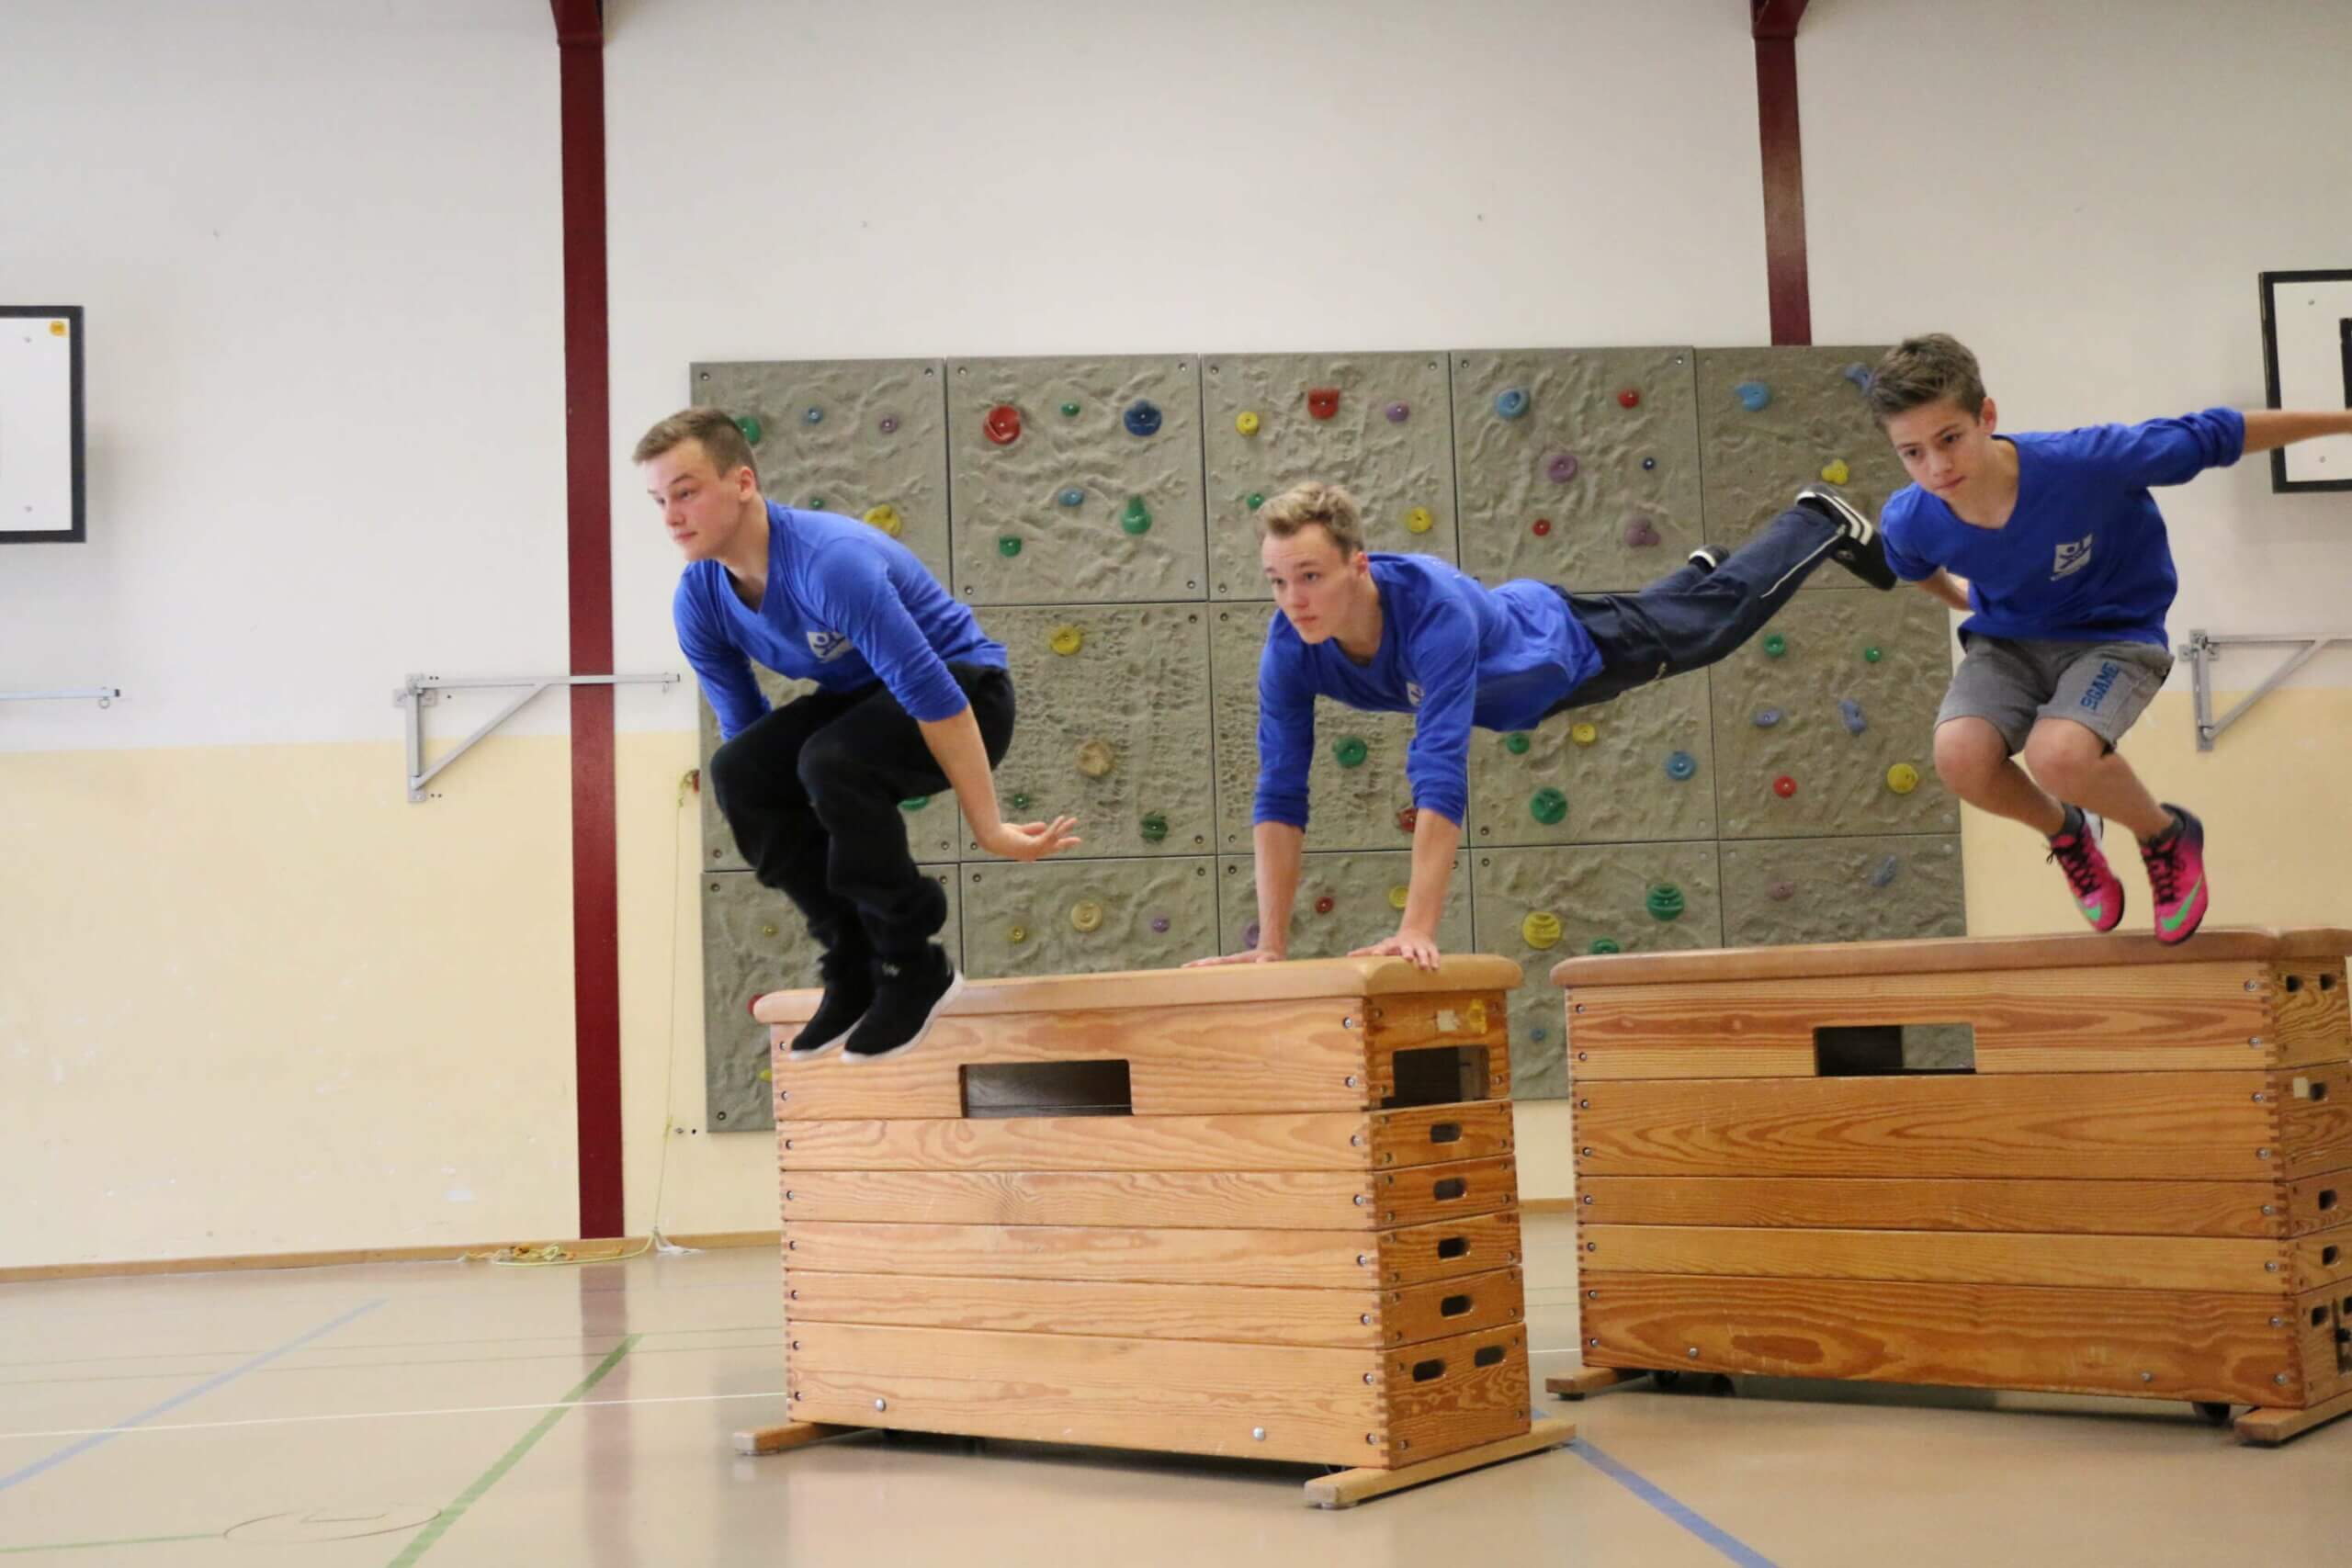 Drei Jungen in blauen T-Shirts springen mit einer Hocke über zwei Turnkasten